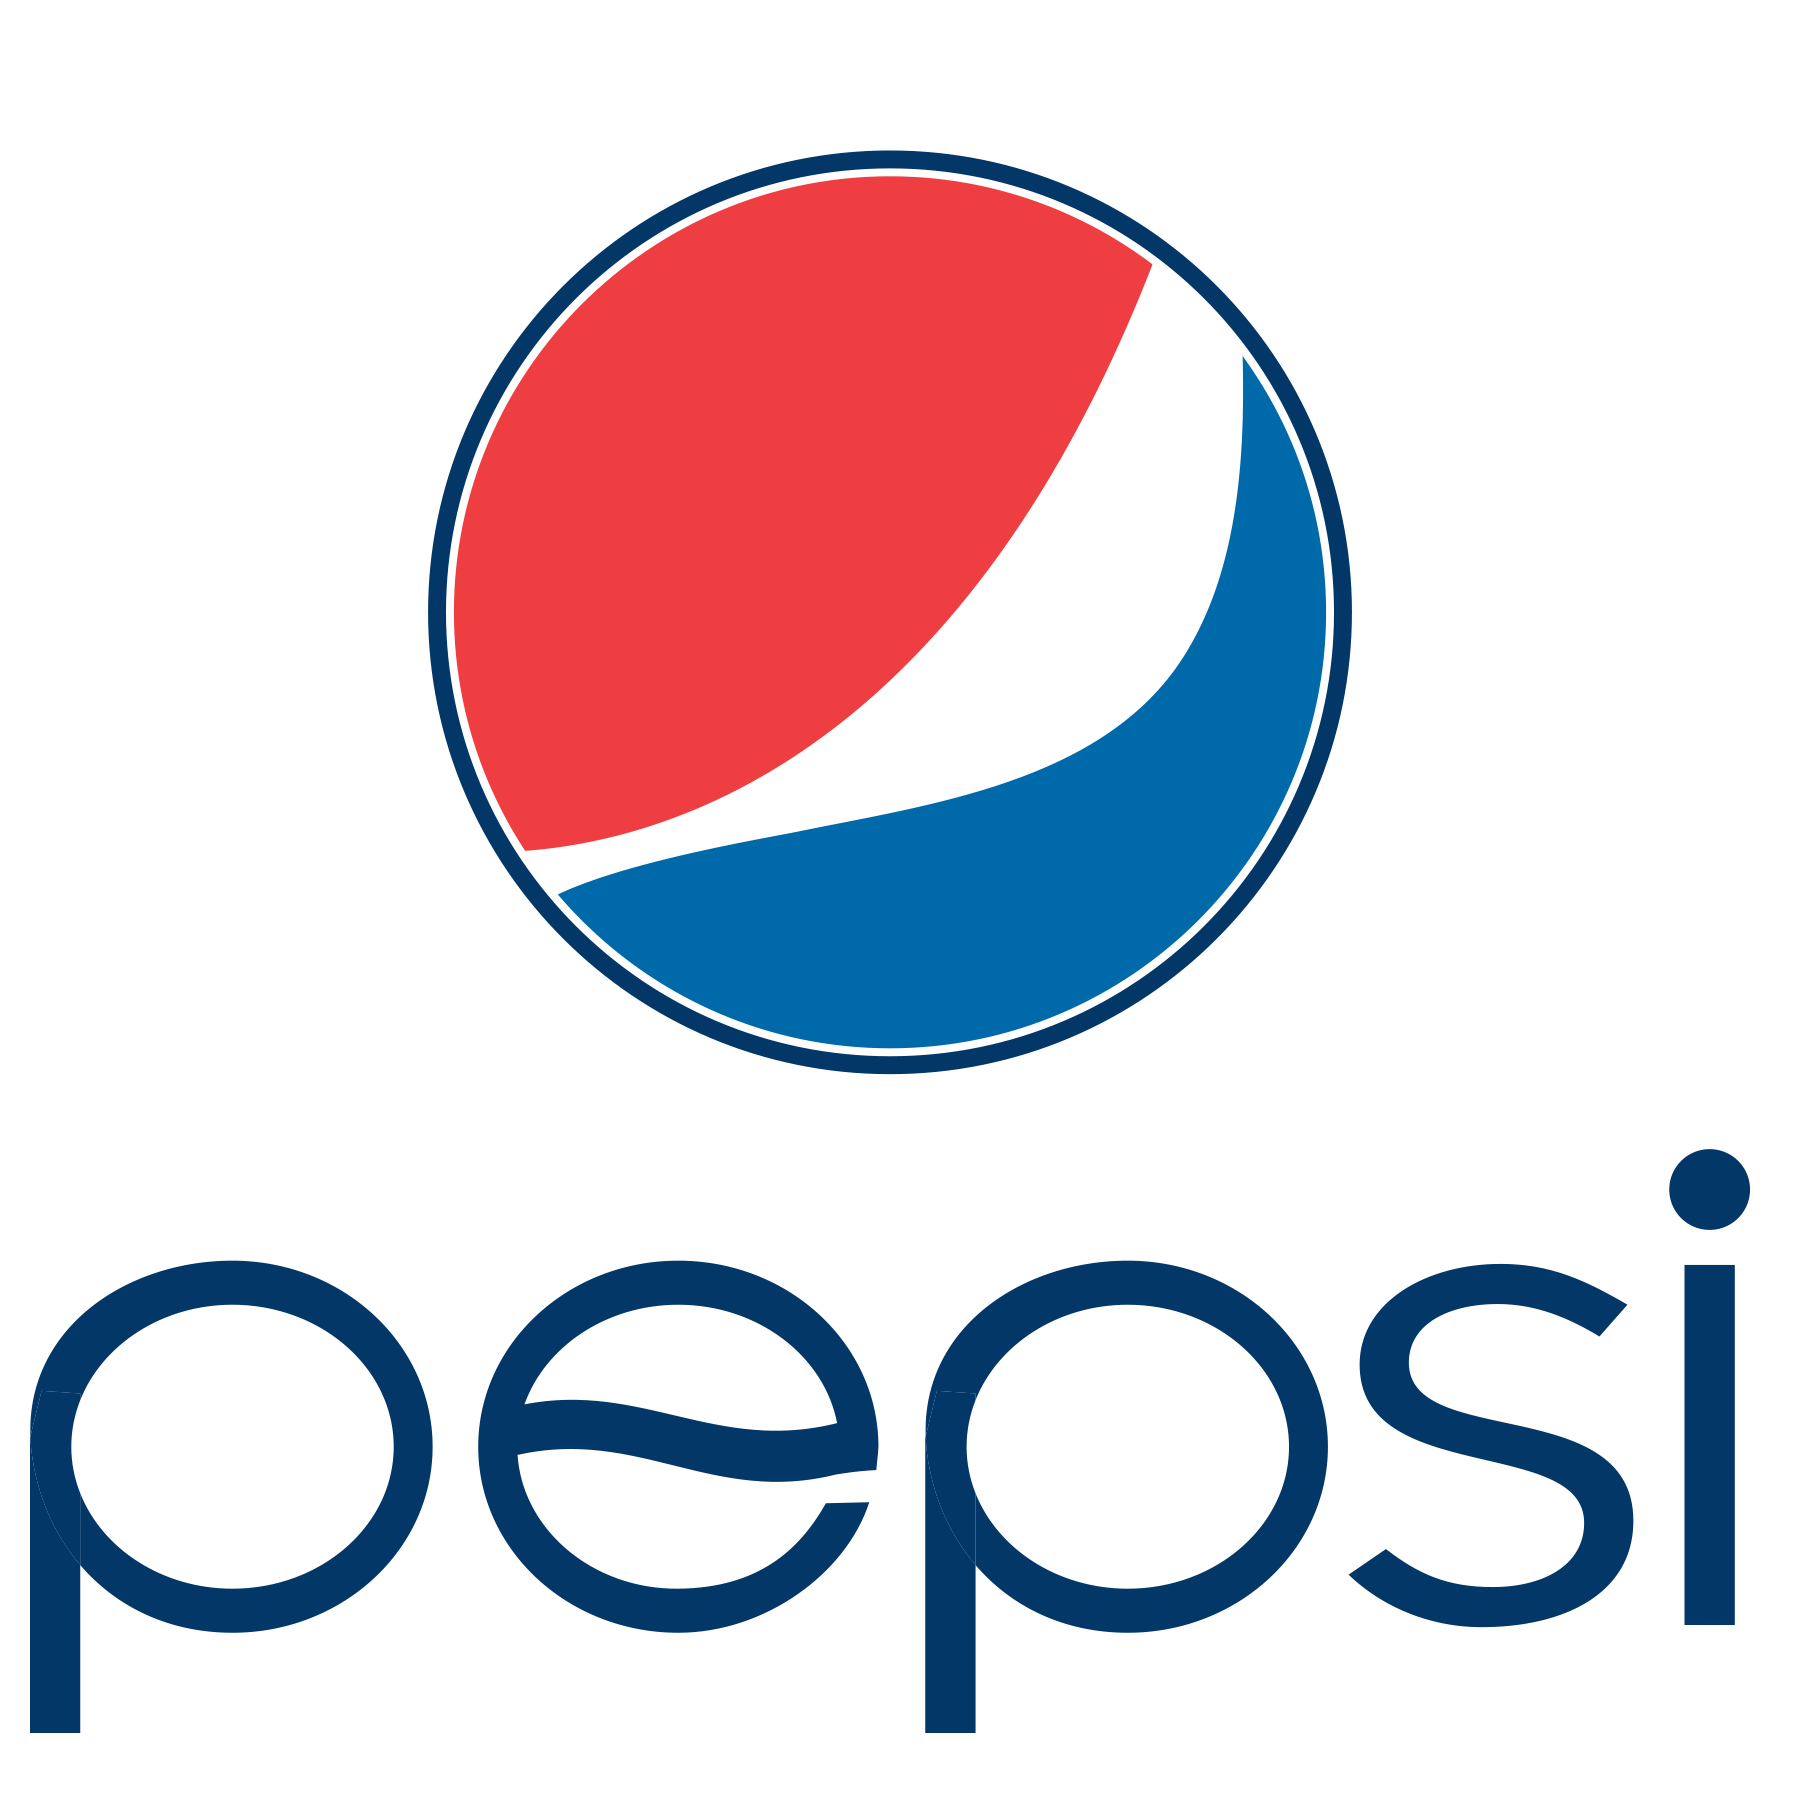 kisspng-pepsi-globe-coca-cola-logo-portable-network-graphi-5c5369cdd7d8b6.2995682815489704458841 TRI